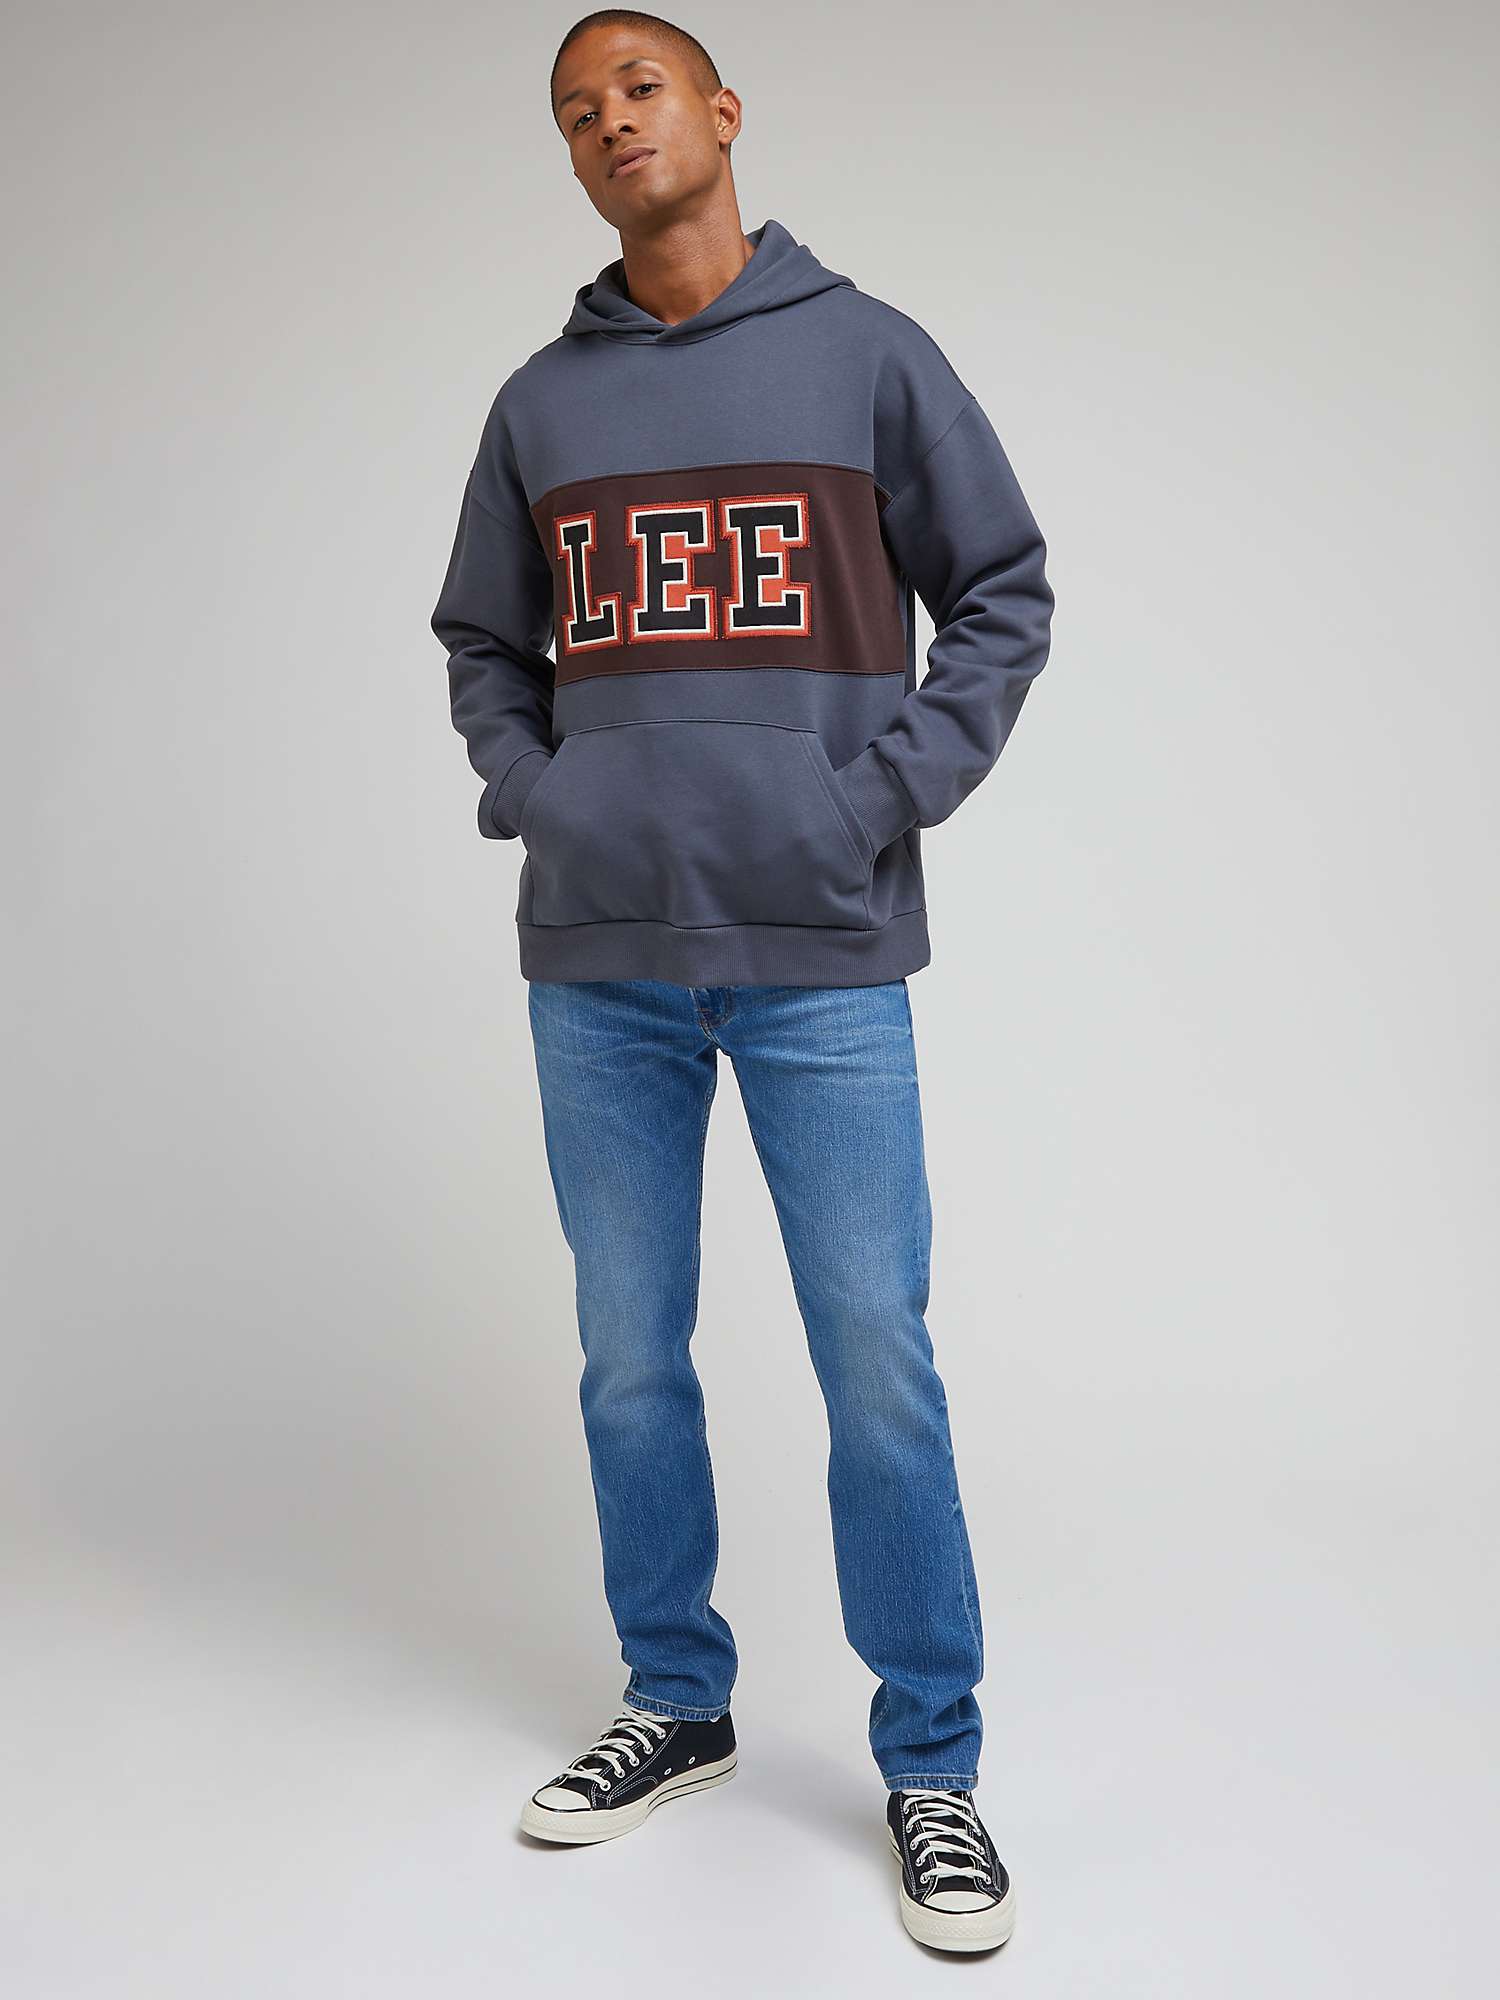 Buy Lee Seasonal Hoodie, Blue/Multi Online at johnlewis.com